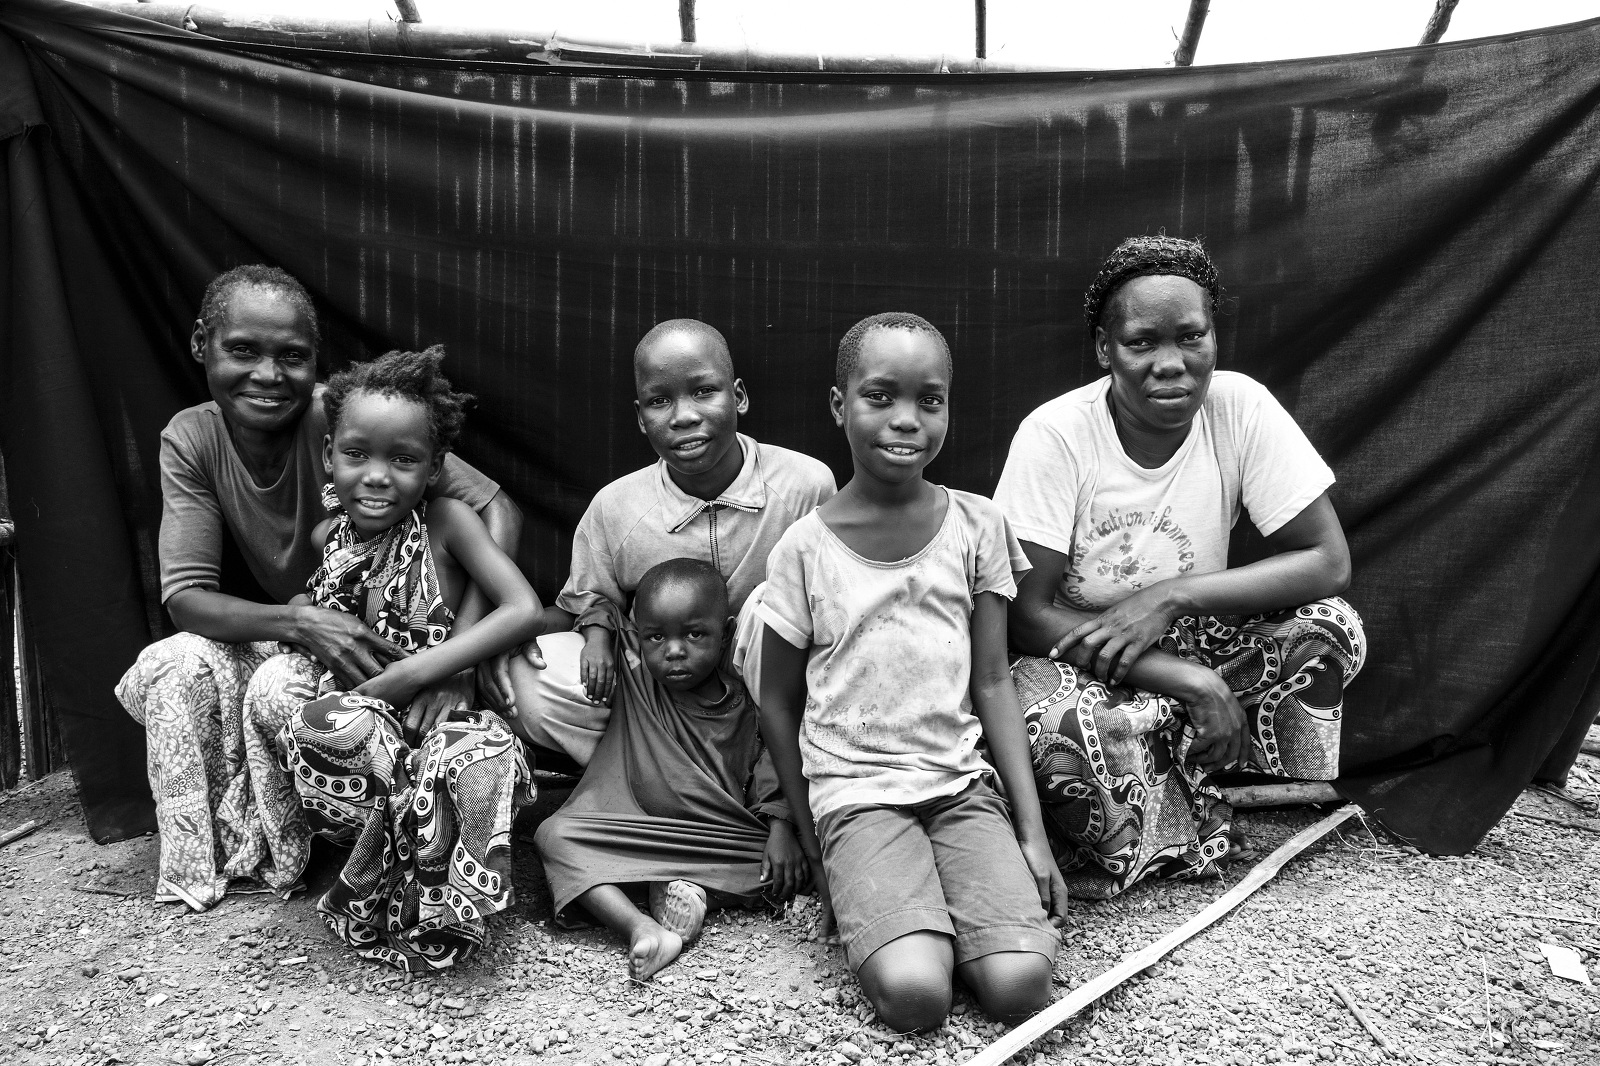 Bonheur, de Moungoumba (República Centroafricana), en el campamento de refugiados de Boyabo con su familia, lo más importante que conserva junto a su propia vida. Brian Sokol/ACNUR